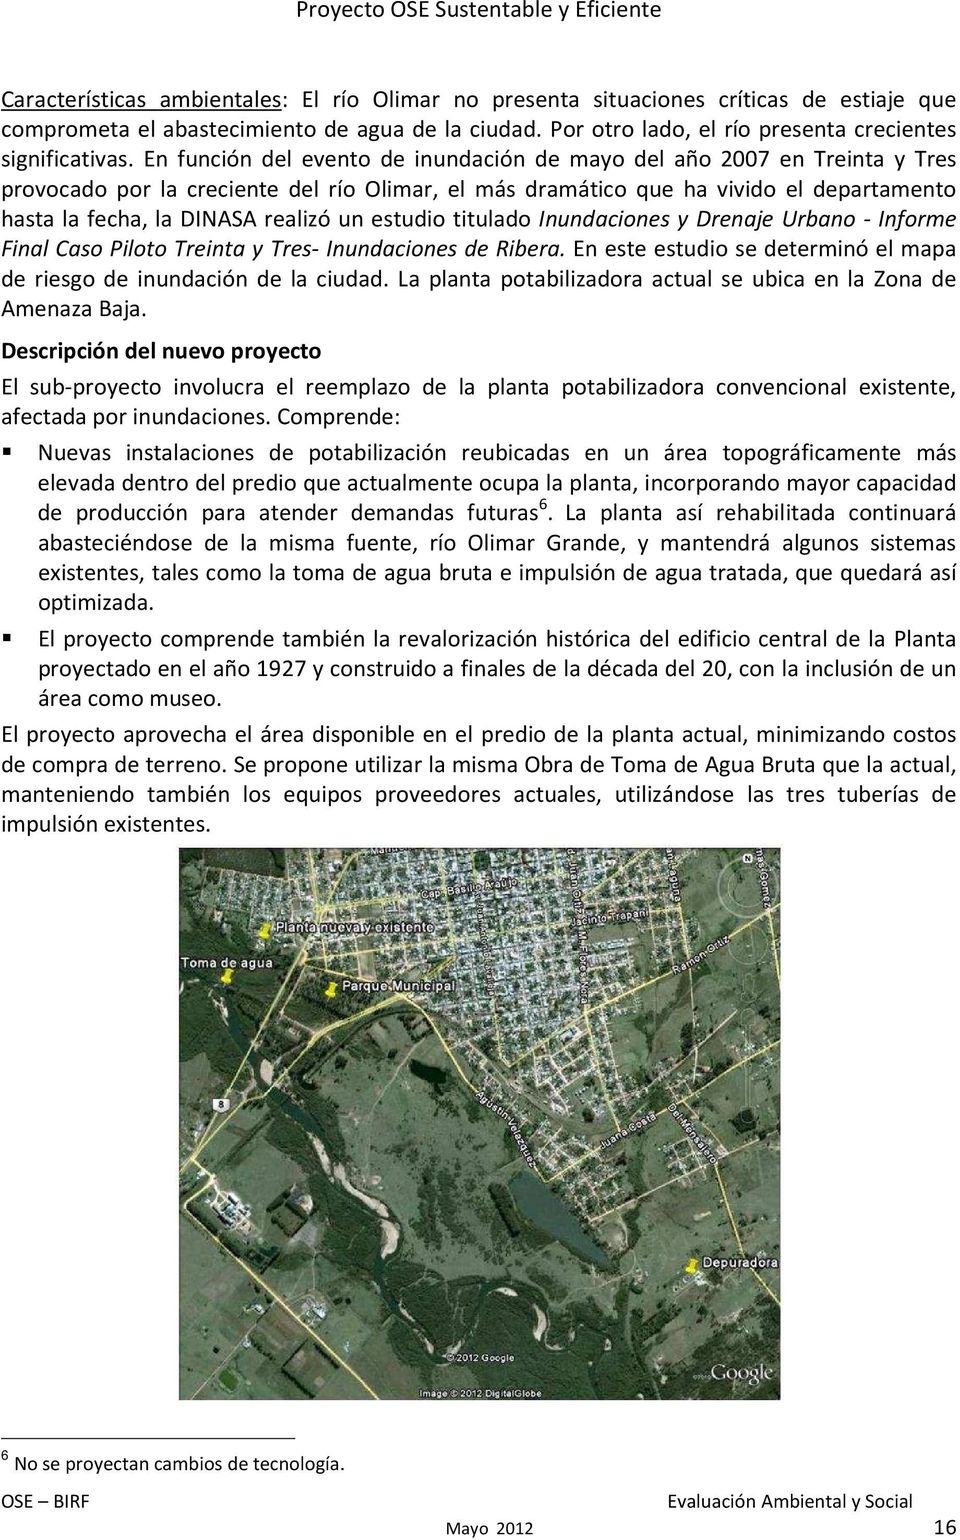 un estudio titulado Inundaciones y Drenaje Urbano - Informe Final Caso Piloto Treinta y Tres- Inundaciones de Ribera. En este estudio se determinó el mapa de riesgo de inundación de la ciudad.